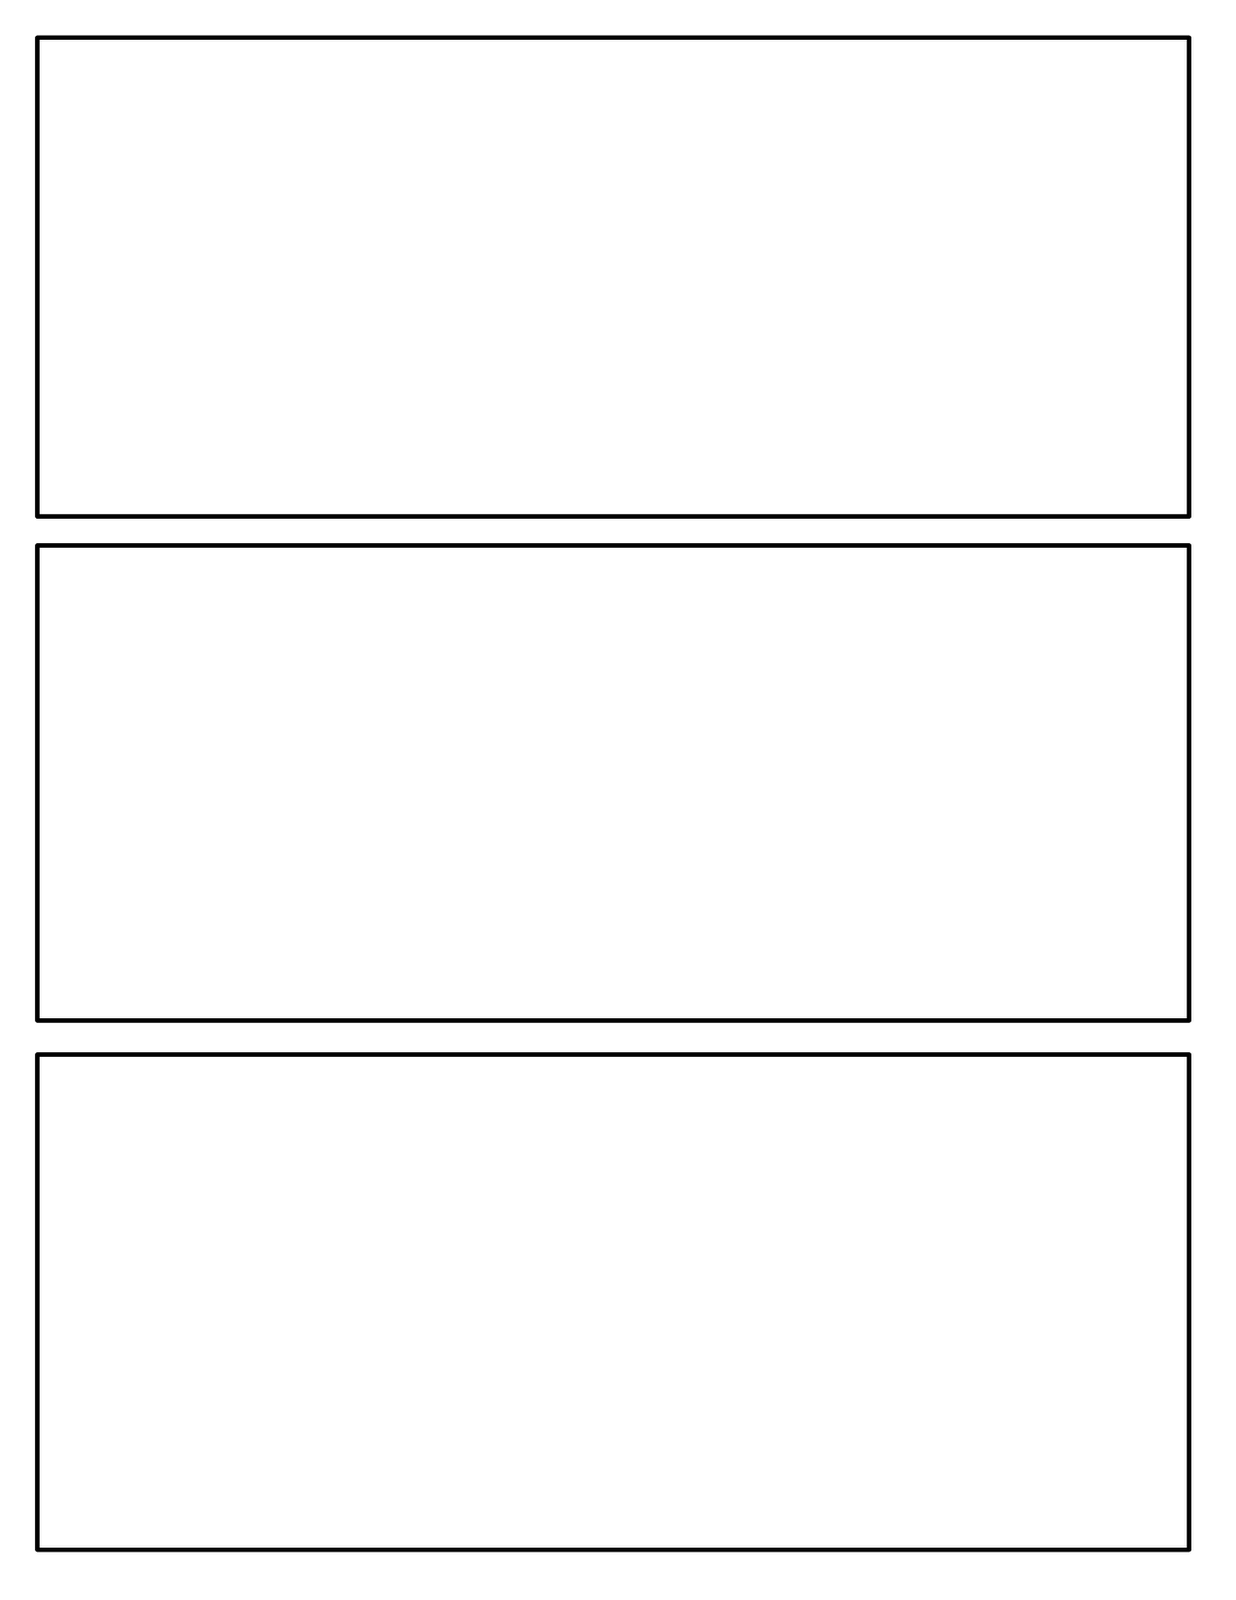 blank-comic-book-panels-7-best-comic-book-panels-printable-printablee-900-x-1272-png